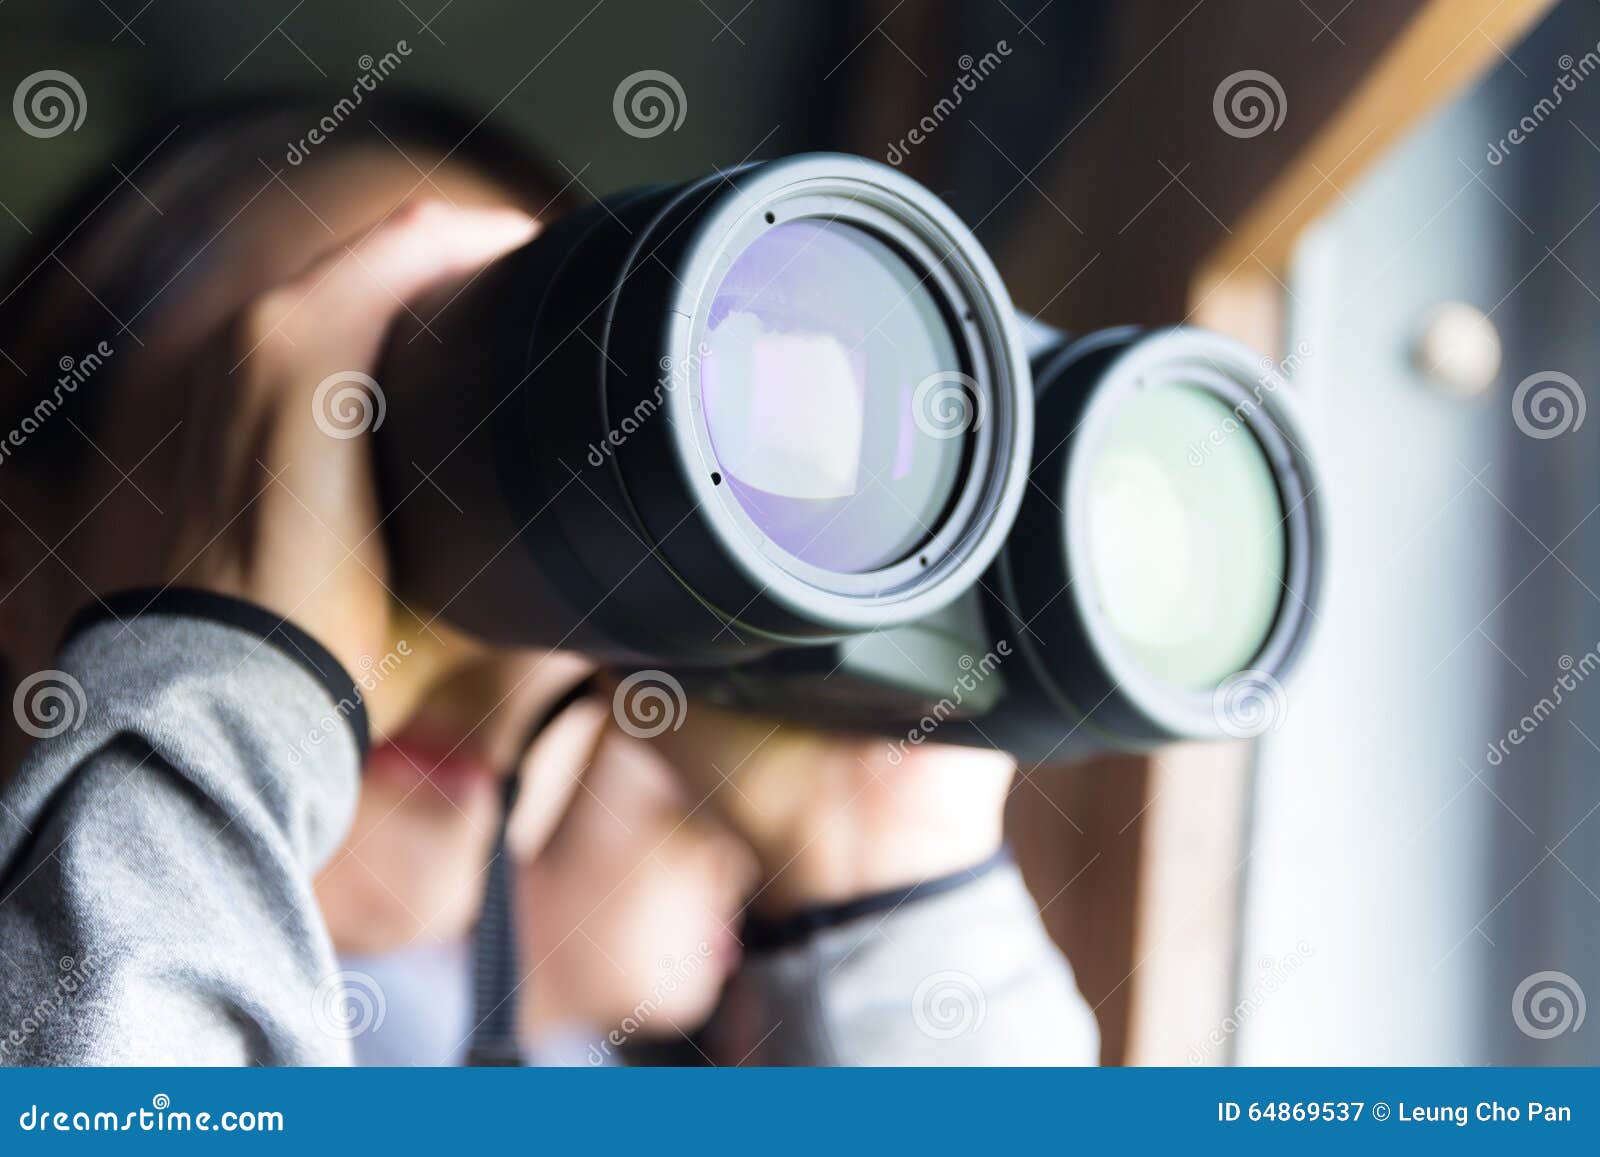 woman looking though binocular